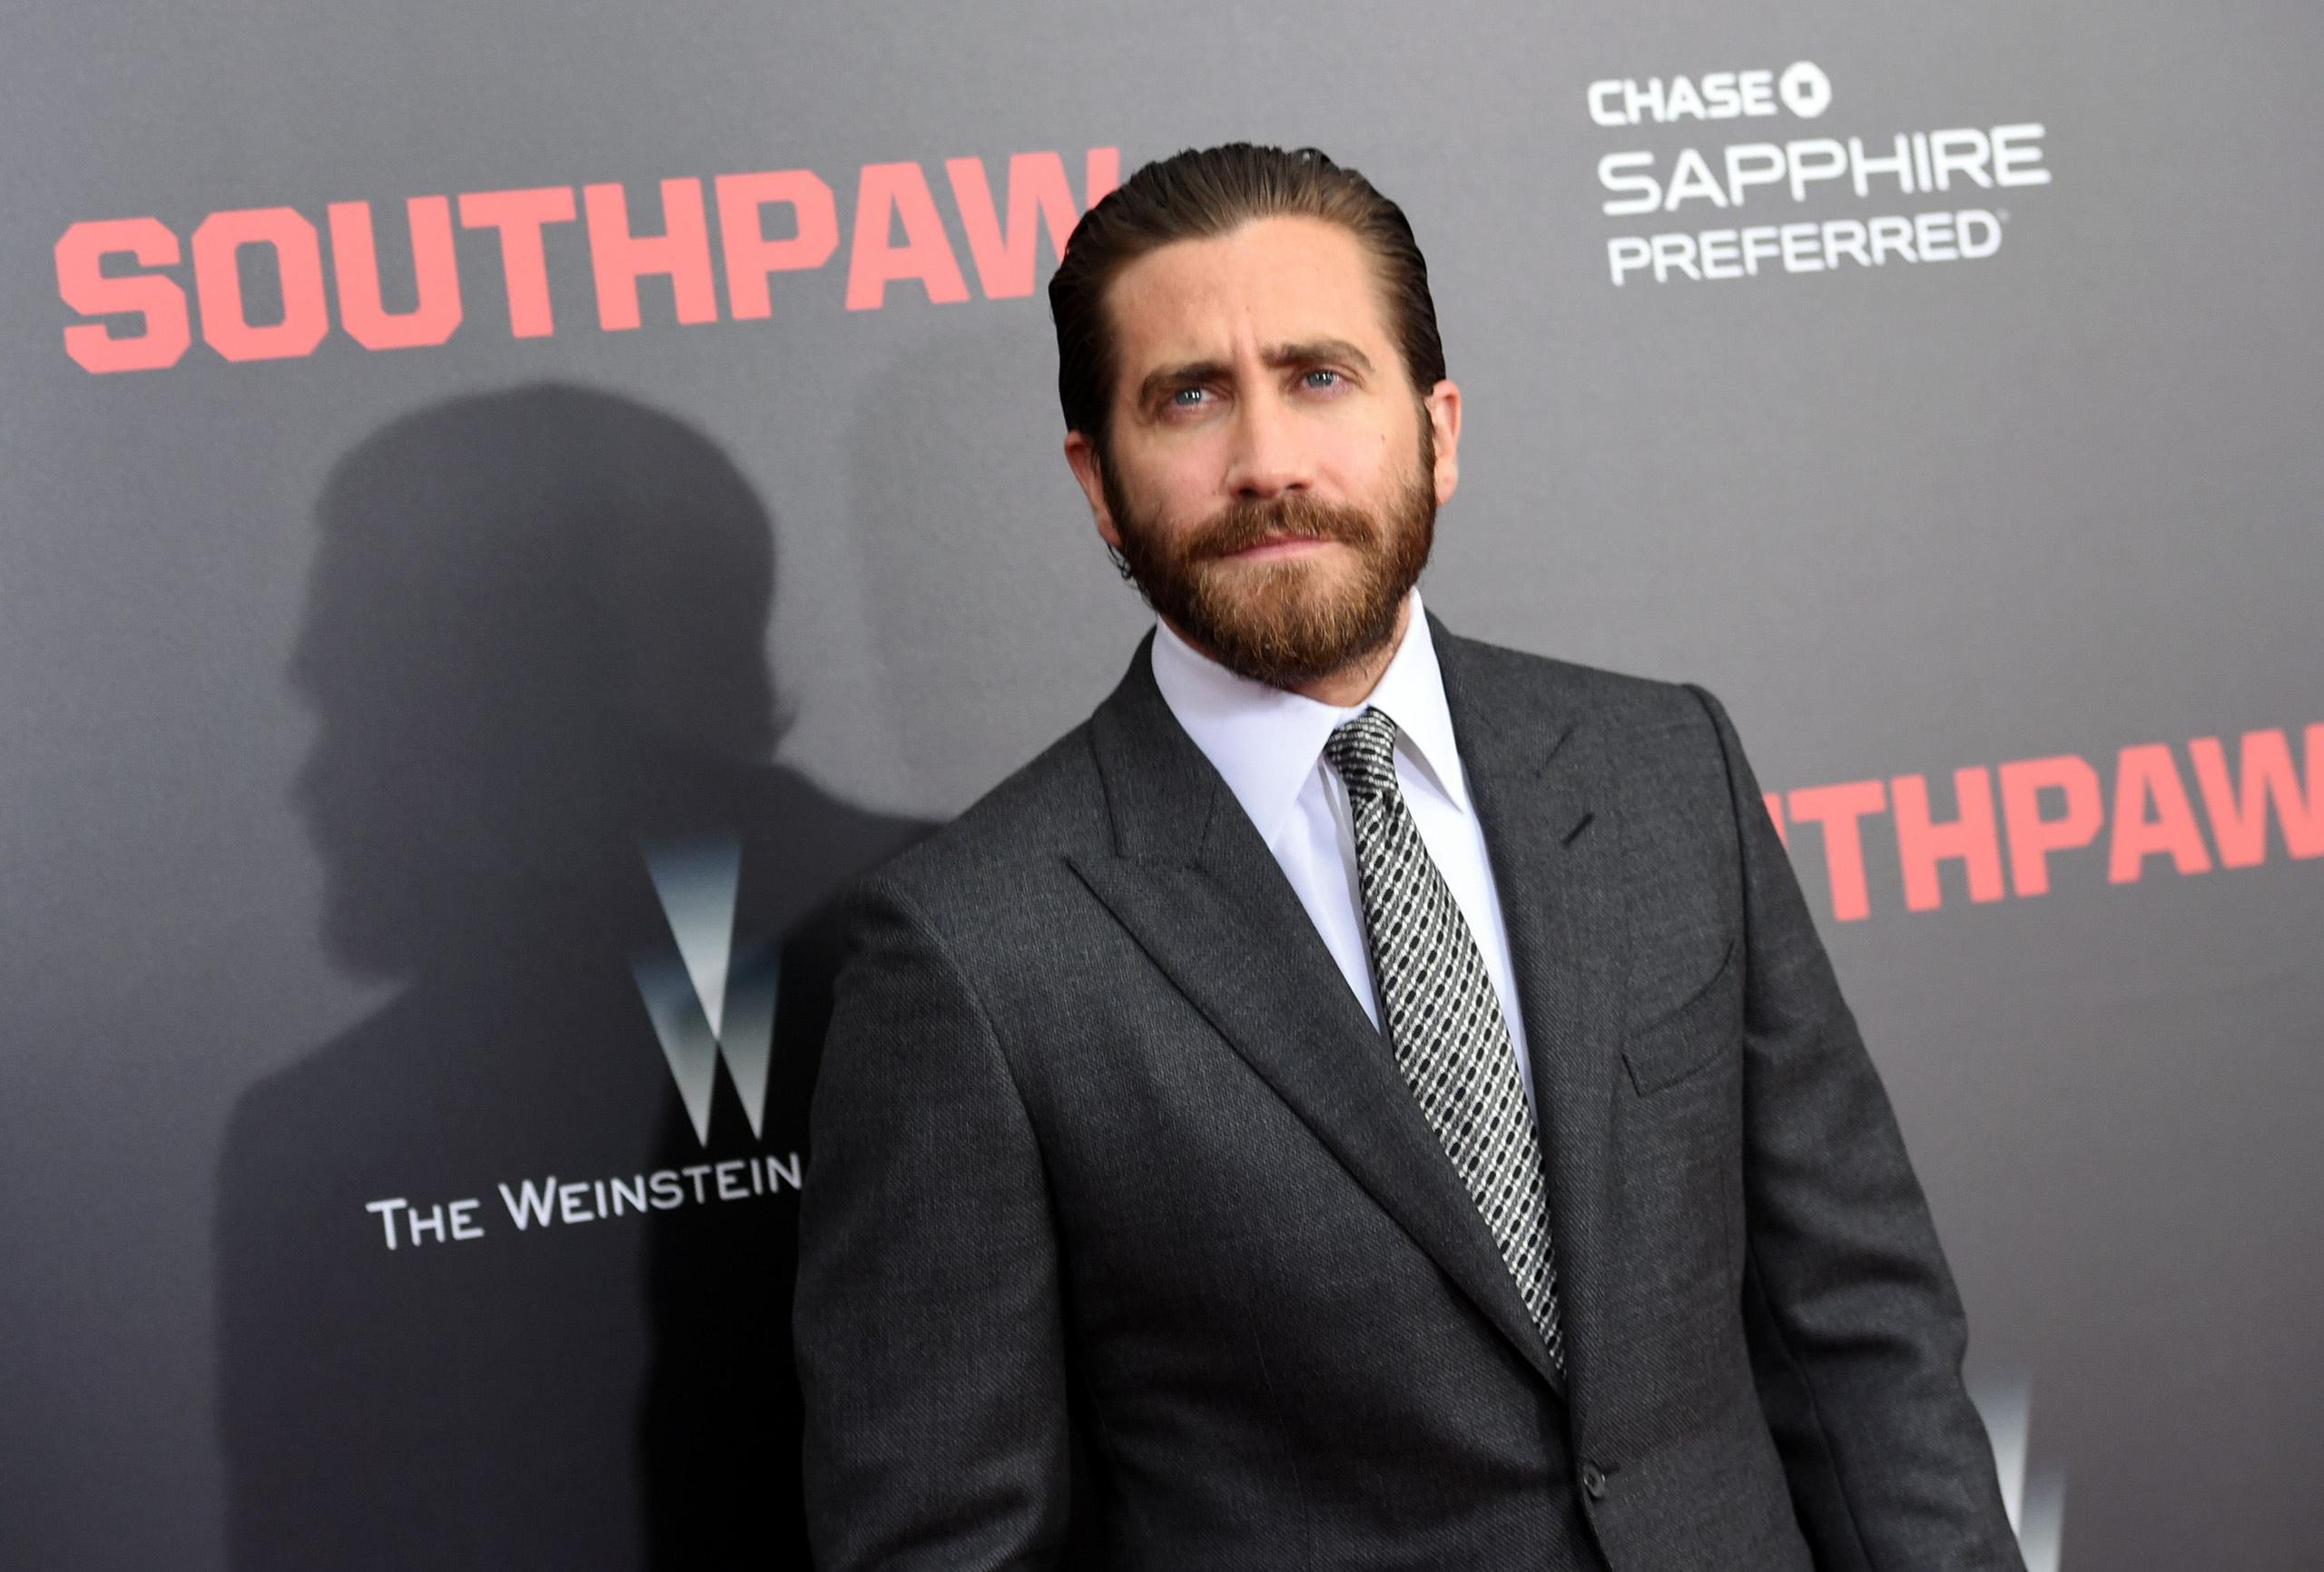 La nueva película de Jake Gyllenhaal estrena este jueves en la Isla